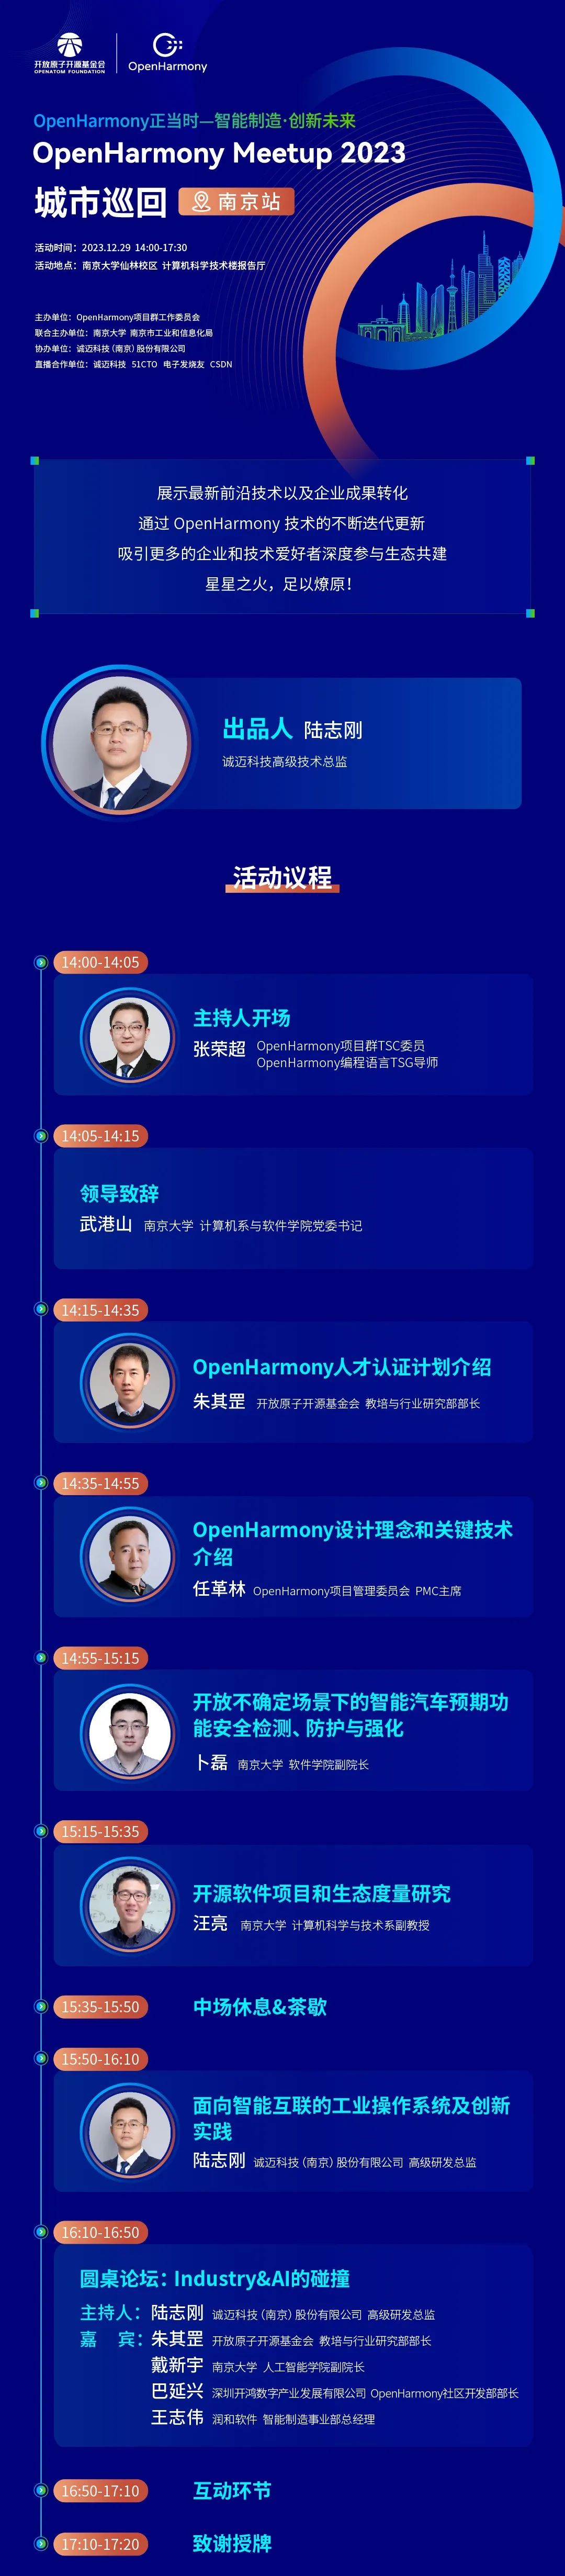 OpenHarmony MeetUp 2023 城市巡回-南京站